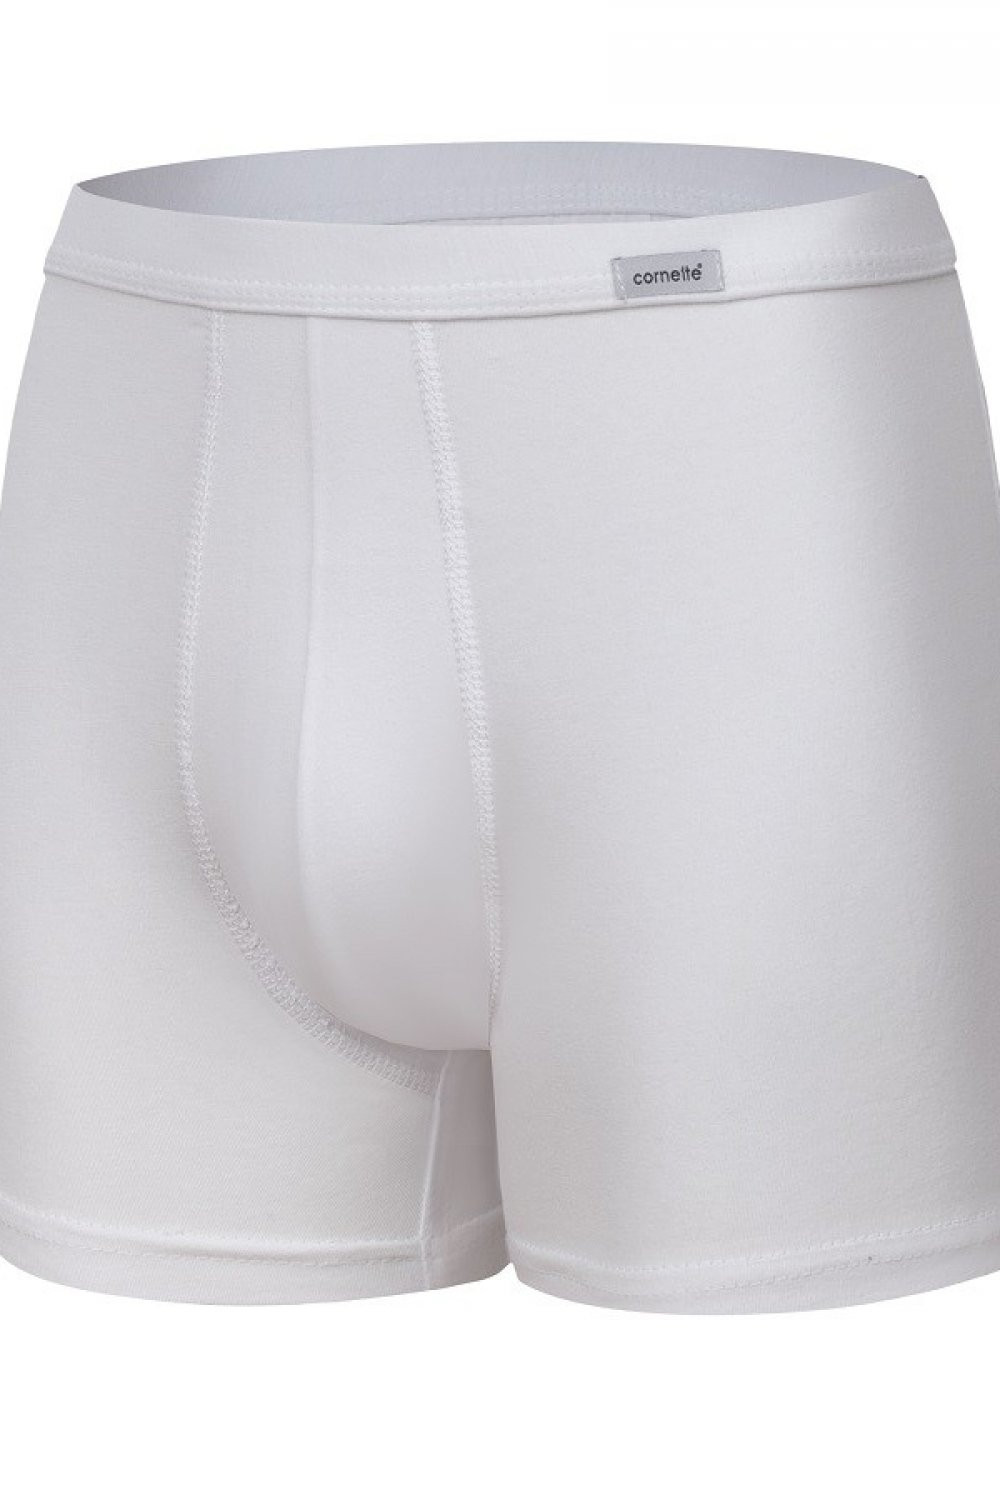 Pánské boxerky 220 white - CORNETTE Barva: Bílá, Velikost: L